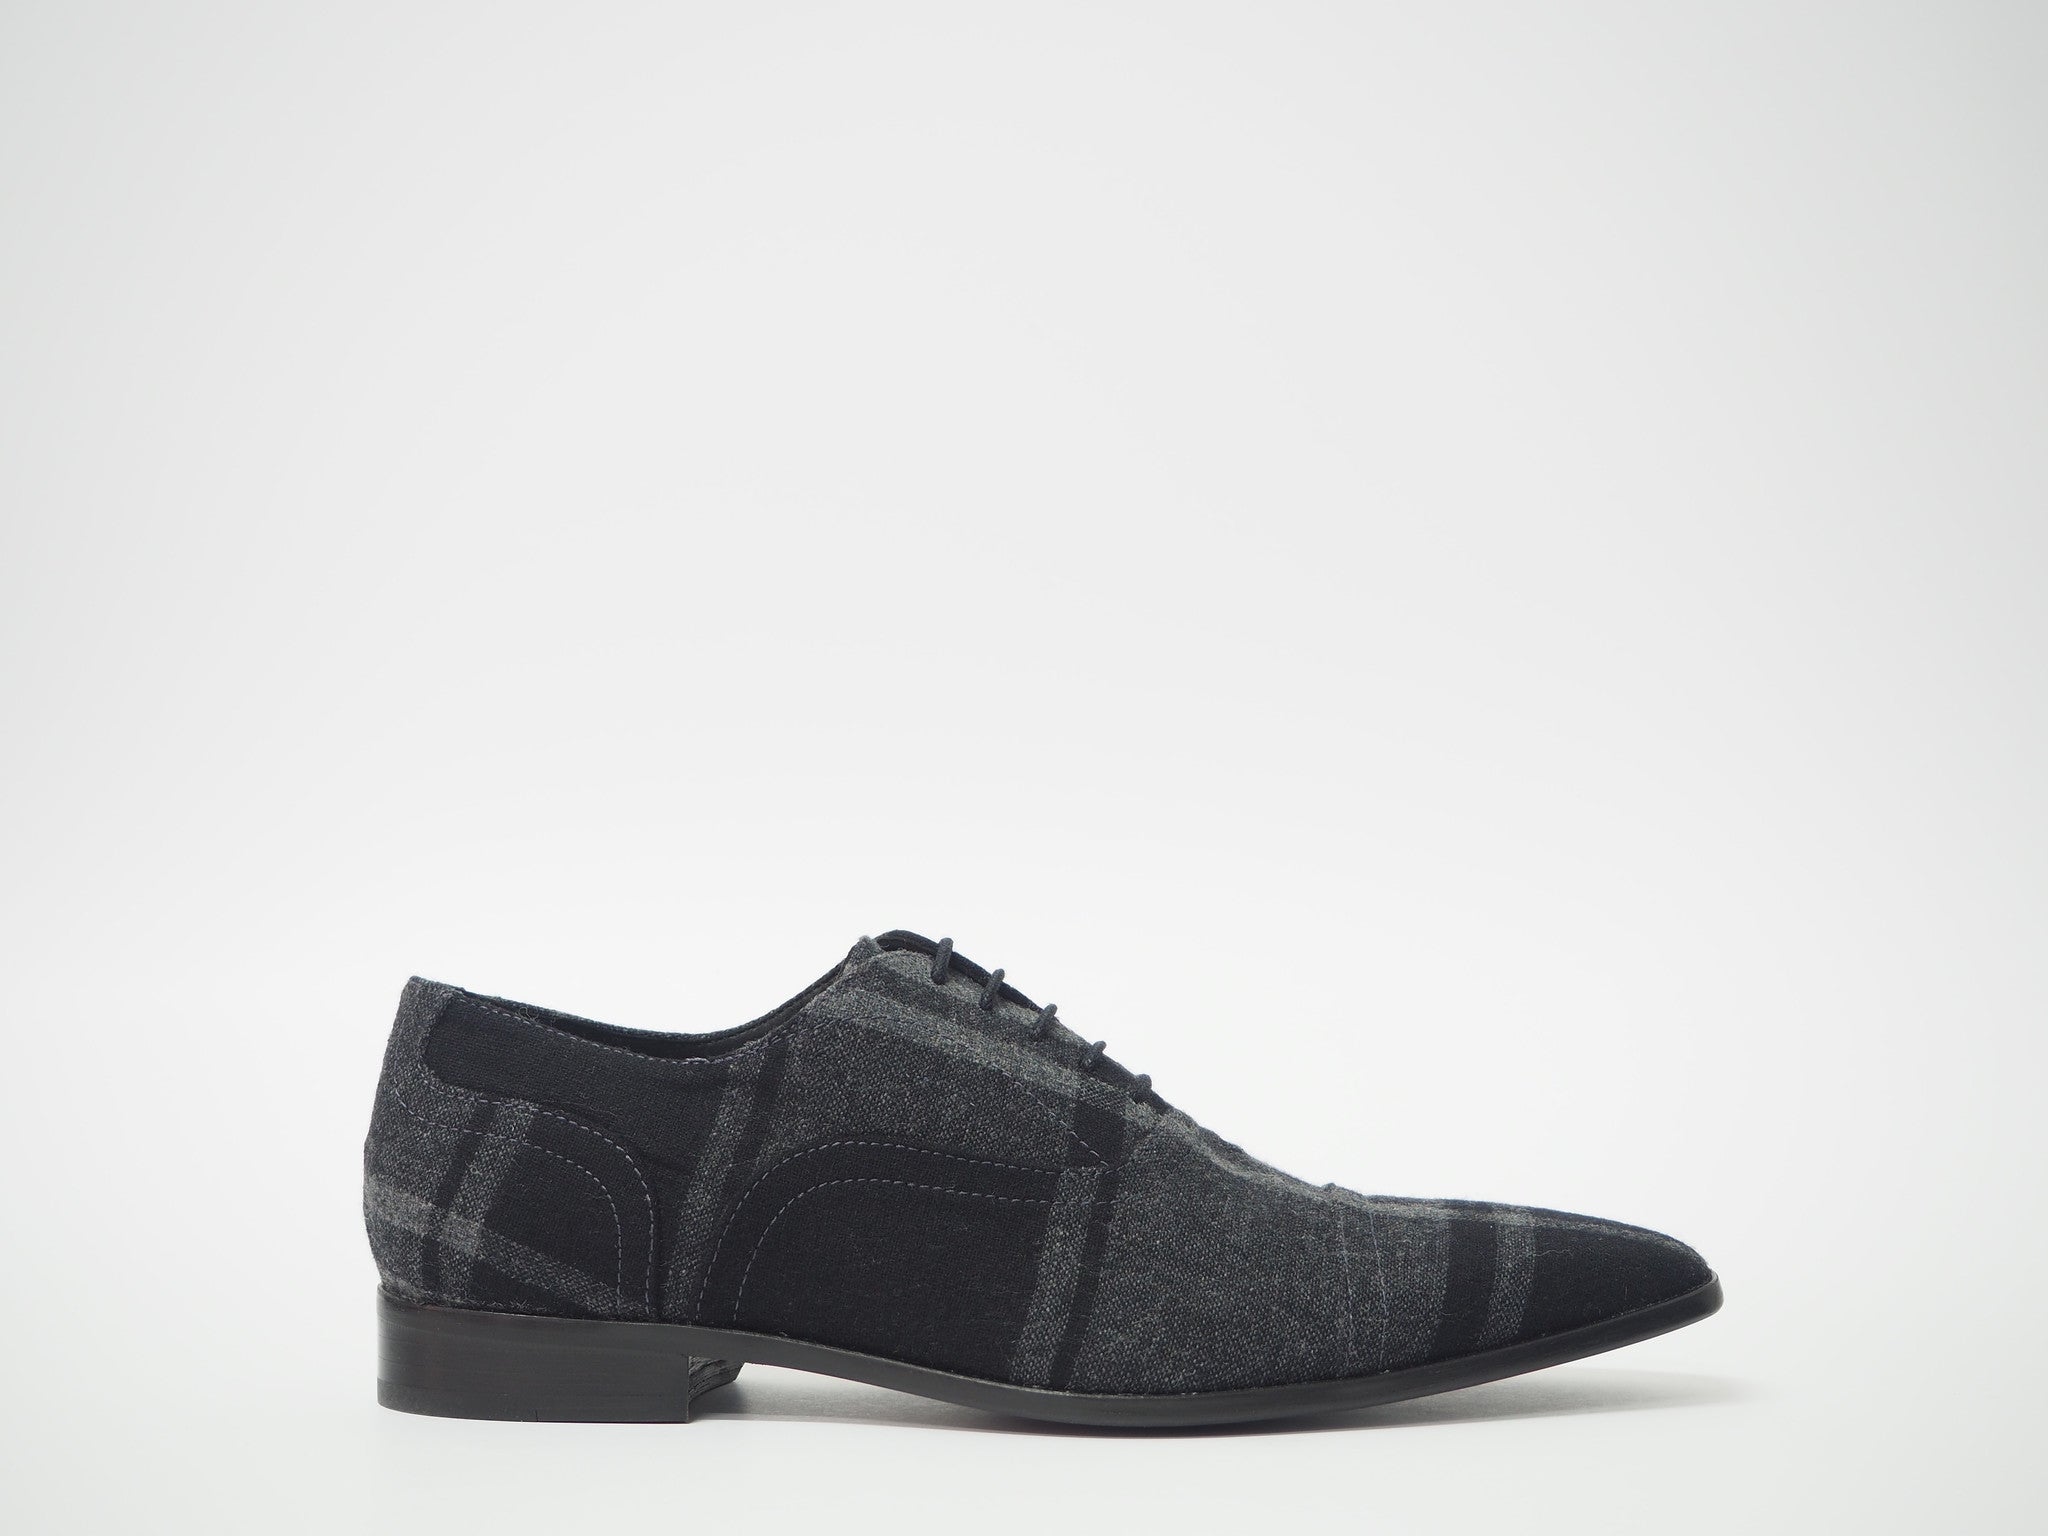 Size 43 - Gray & Black Tartan Oxford